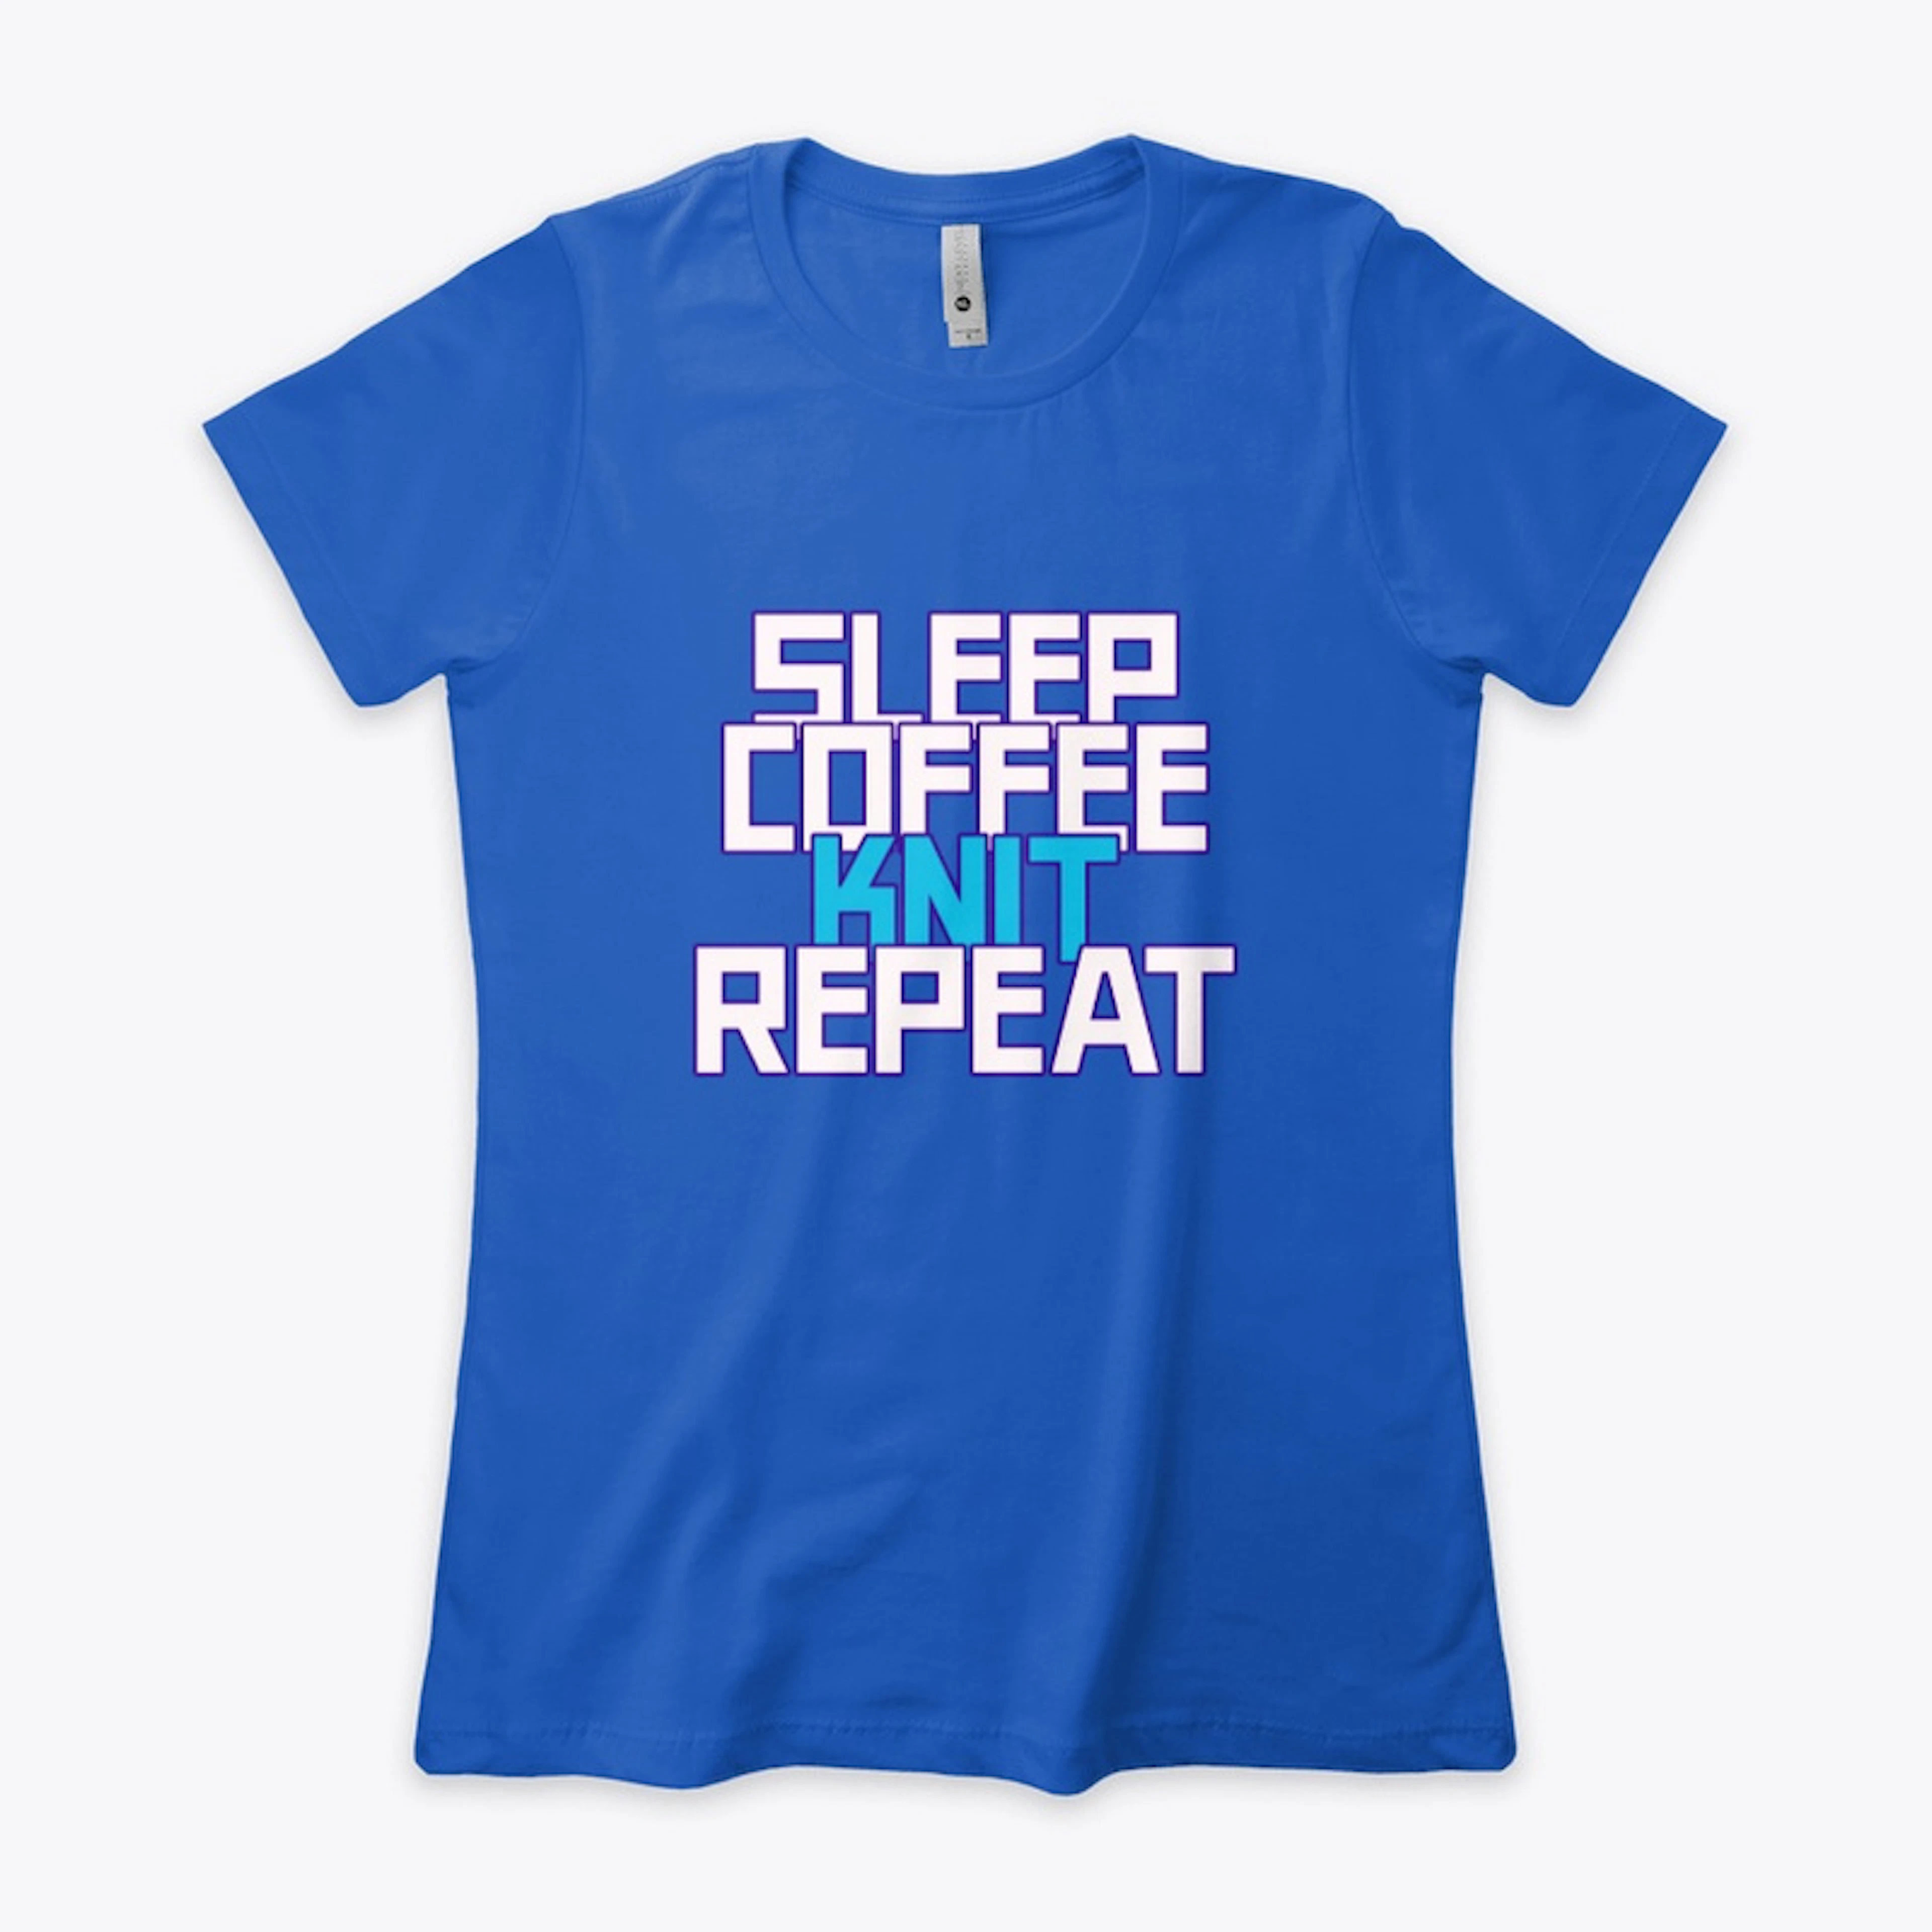 Sleep Coffee Knit Repeat